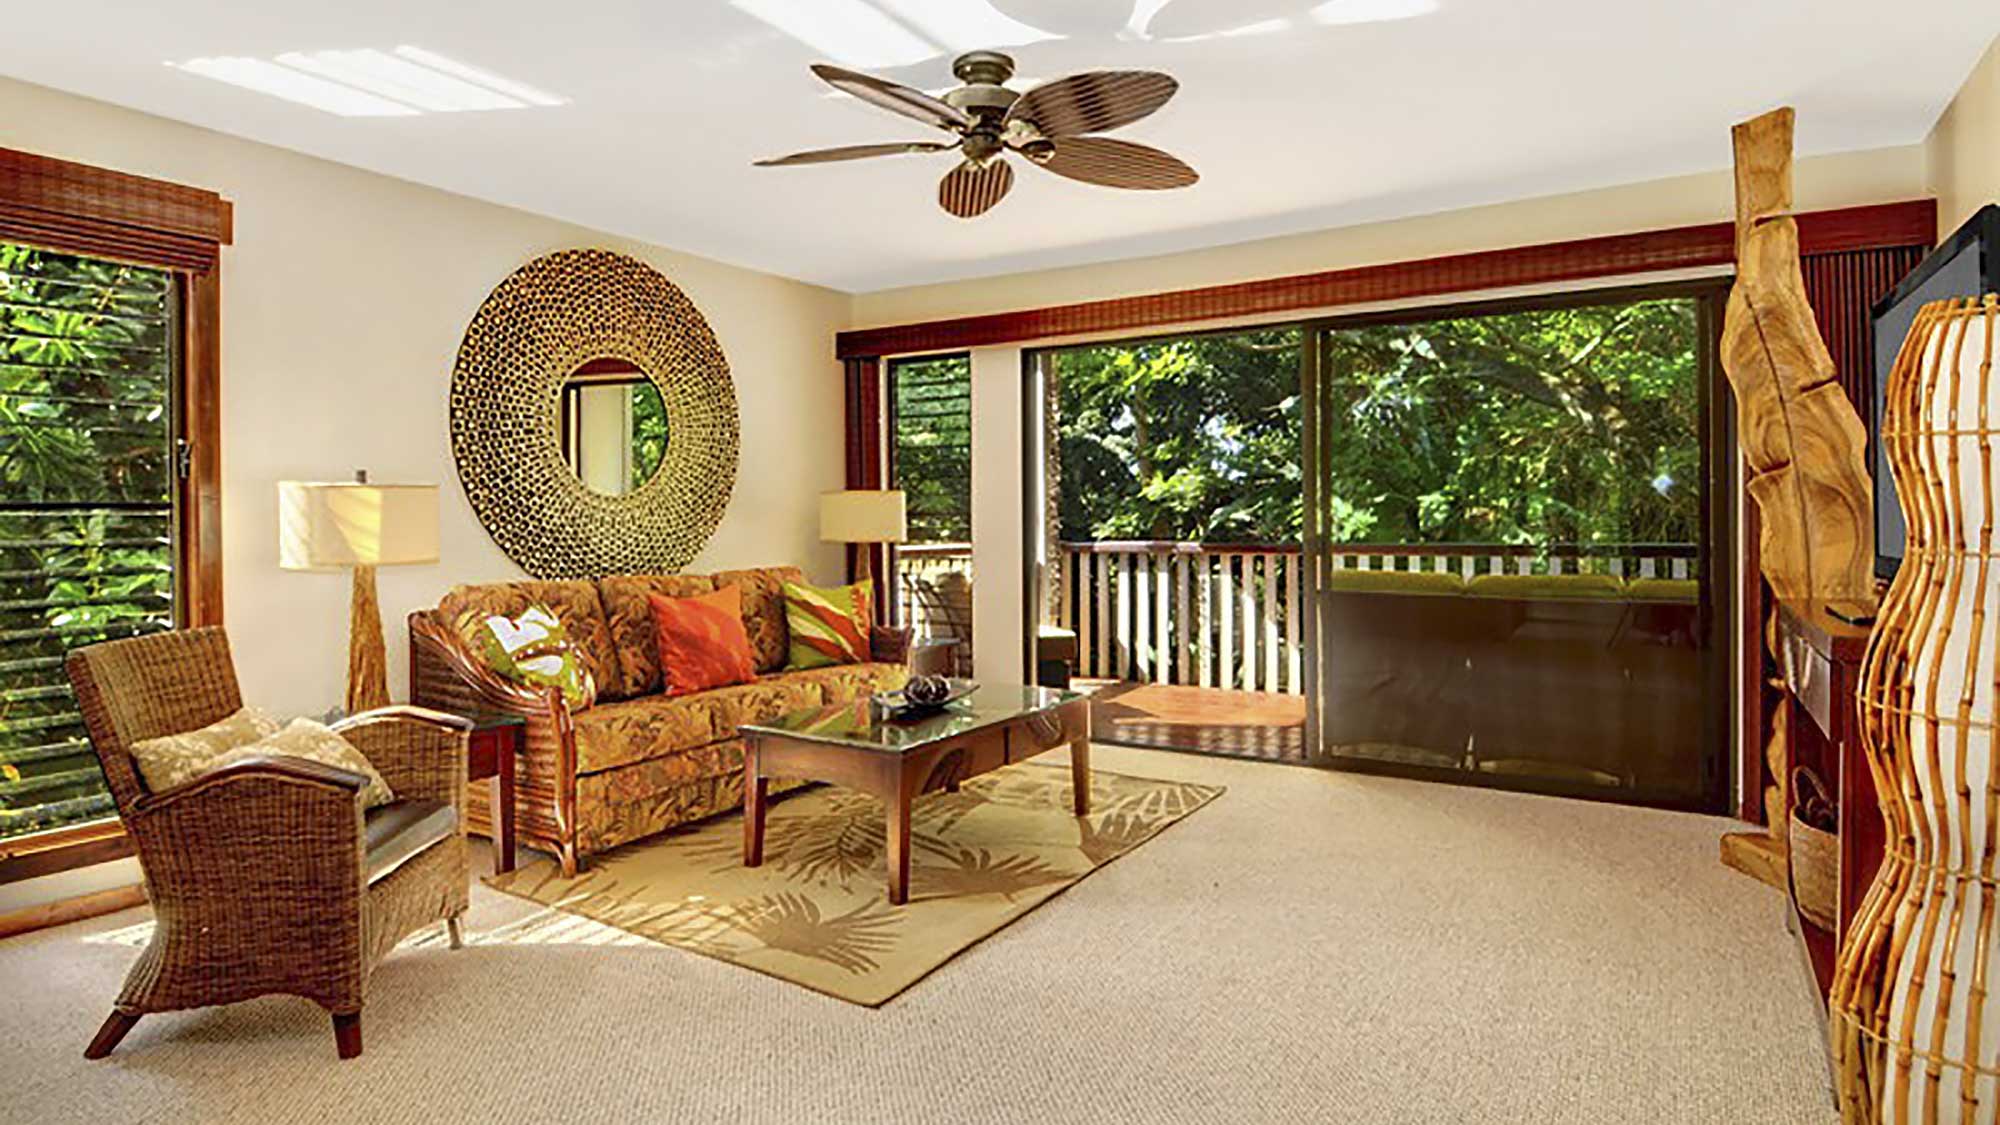 Waikomo Stream Villas #423 - Living Room & Lanai View - Parrish Kauai